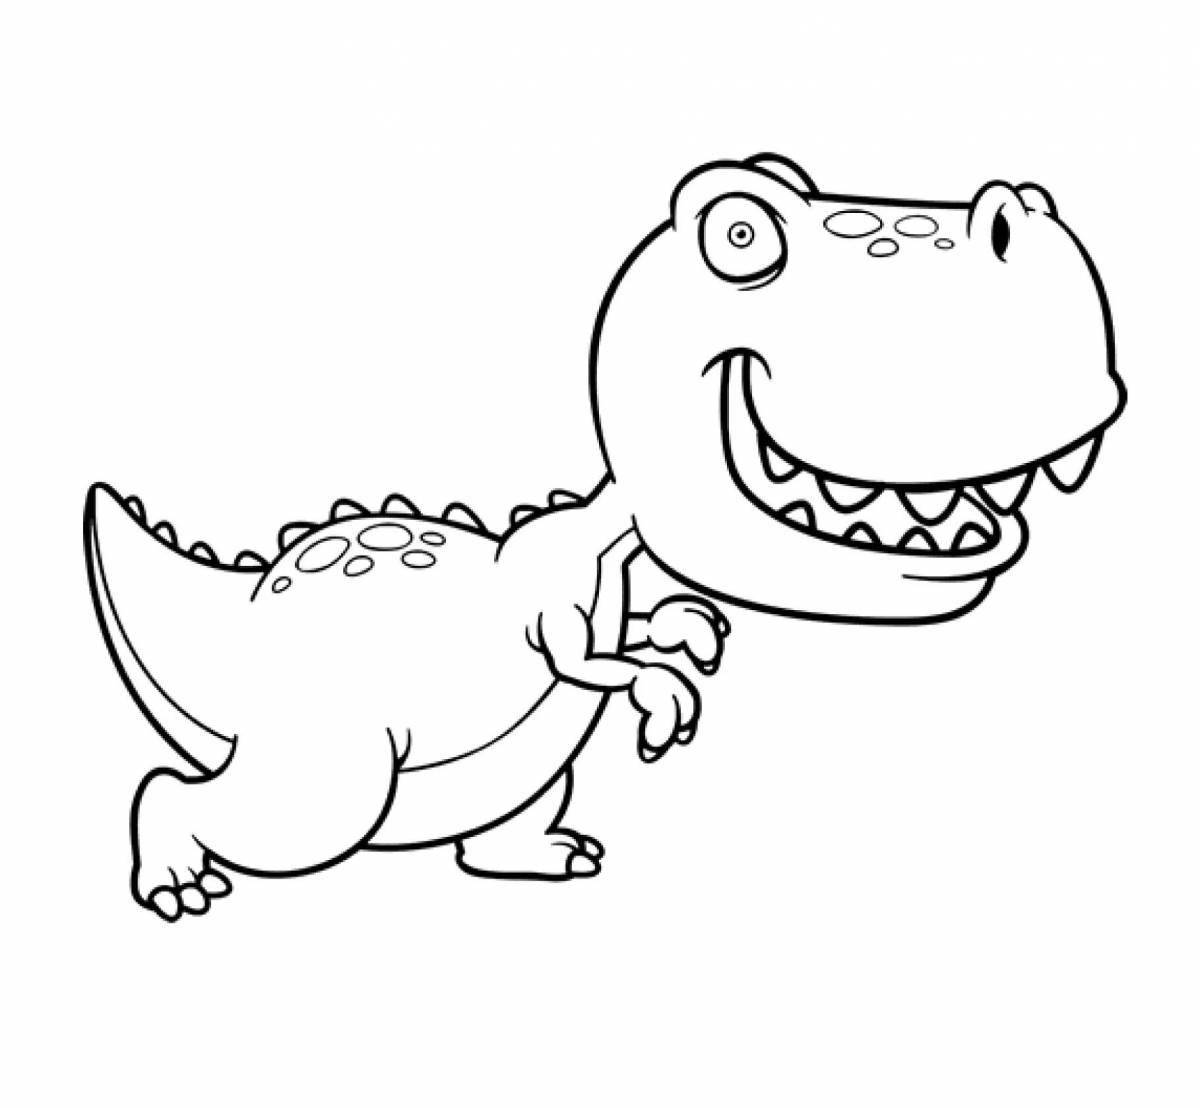 Tyrannosaurus magic seal coloring page